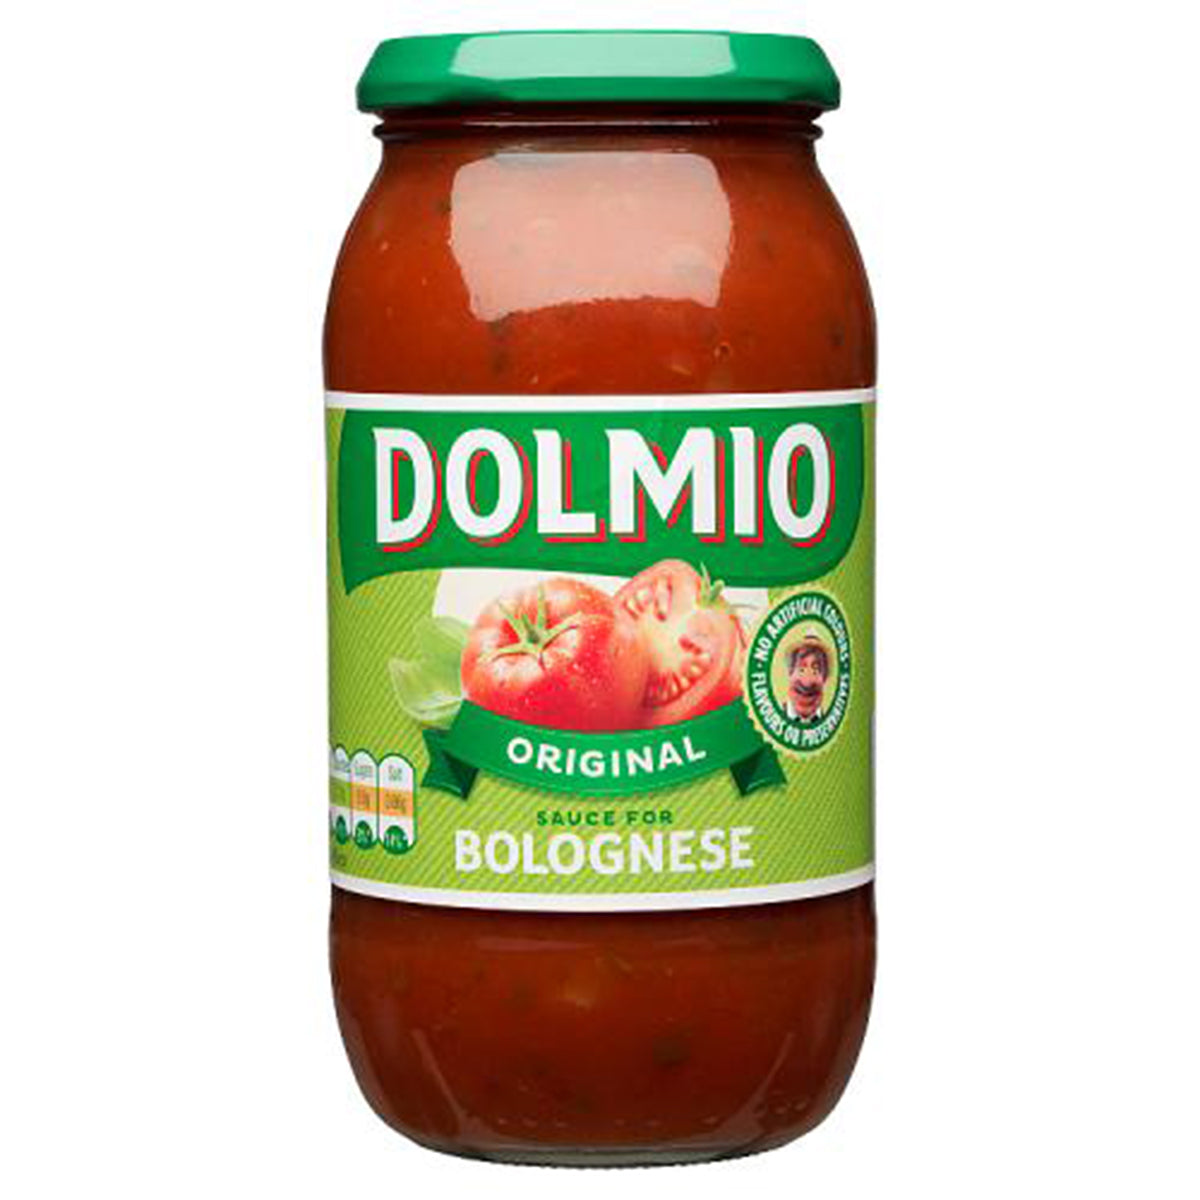 A jar of Dolmio - Original - 500g tomato sauce on a white background.